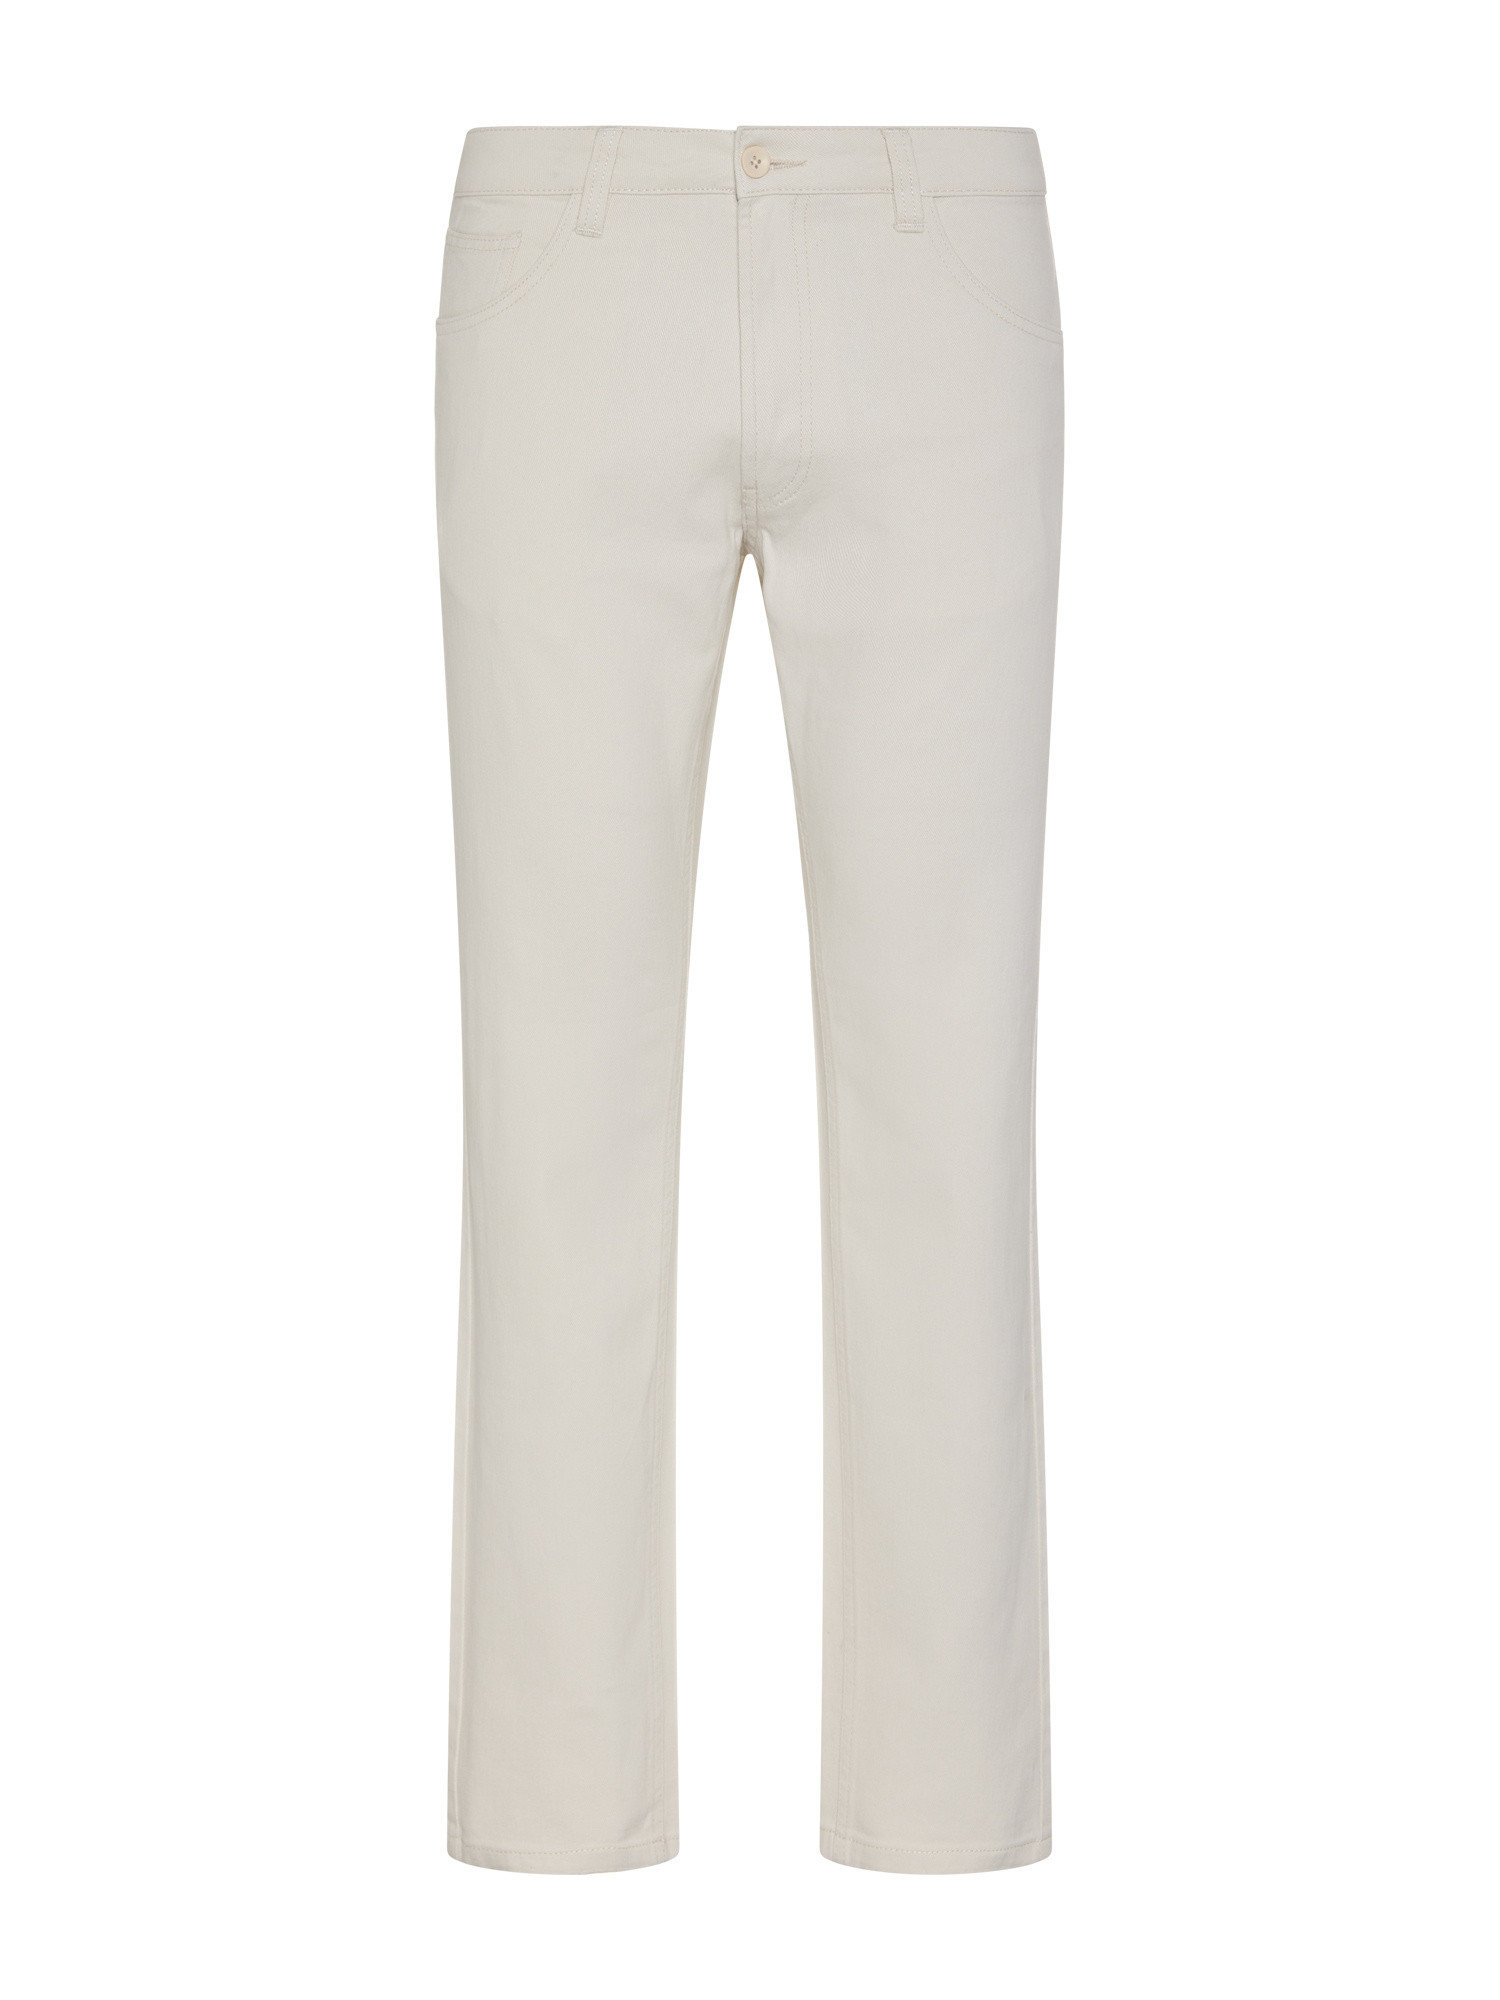 JCT брюки стандартного кроя с пятью карманами из чистого хлопка., белый